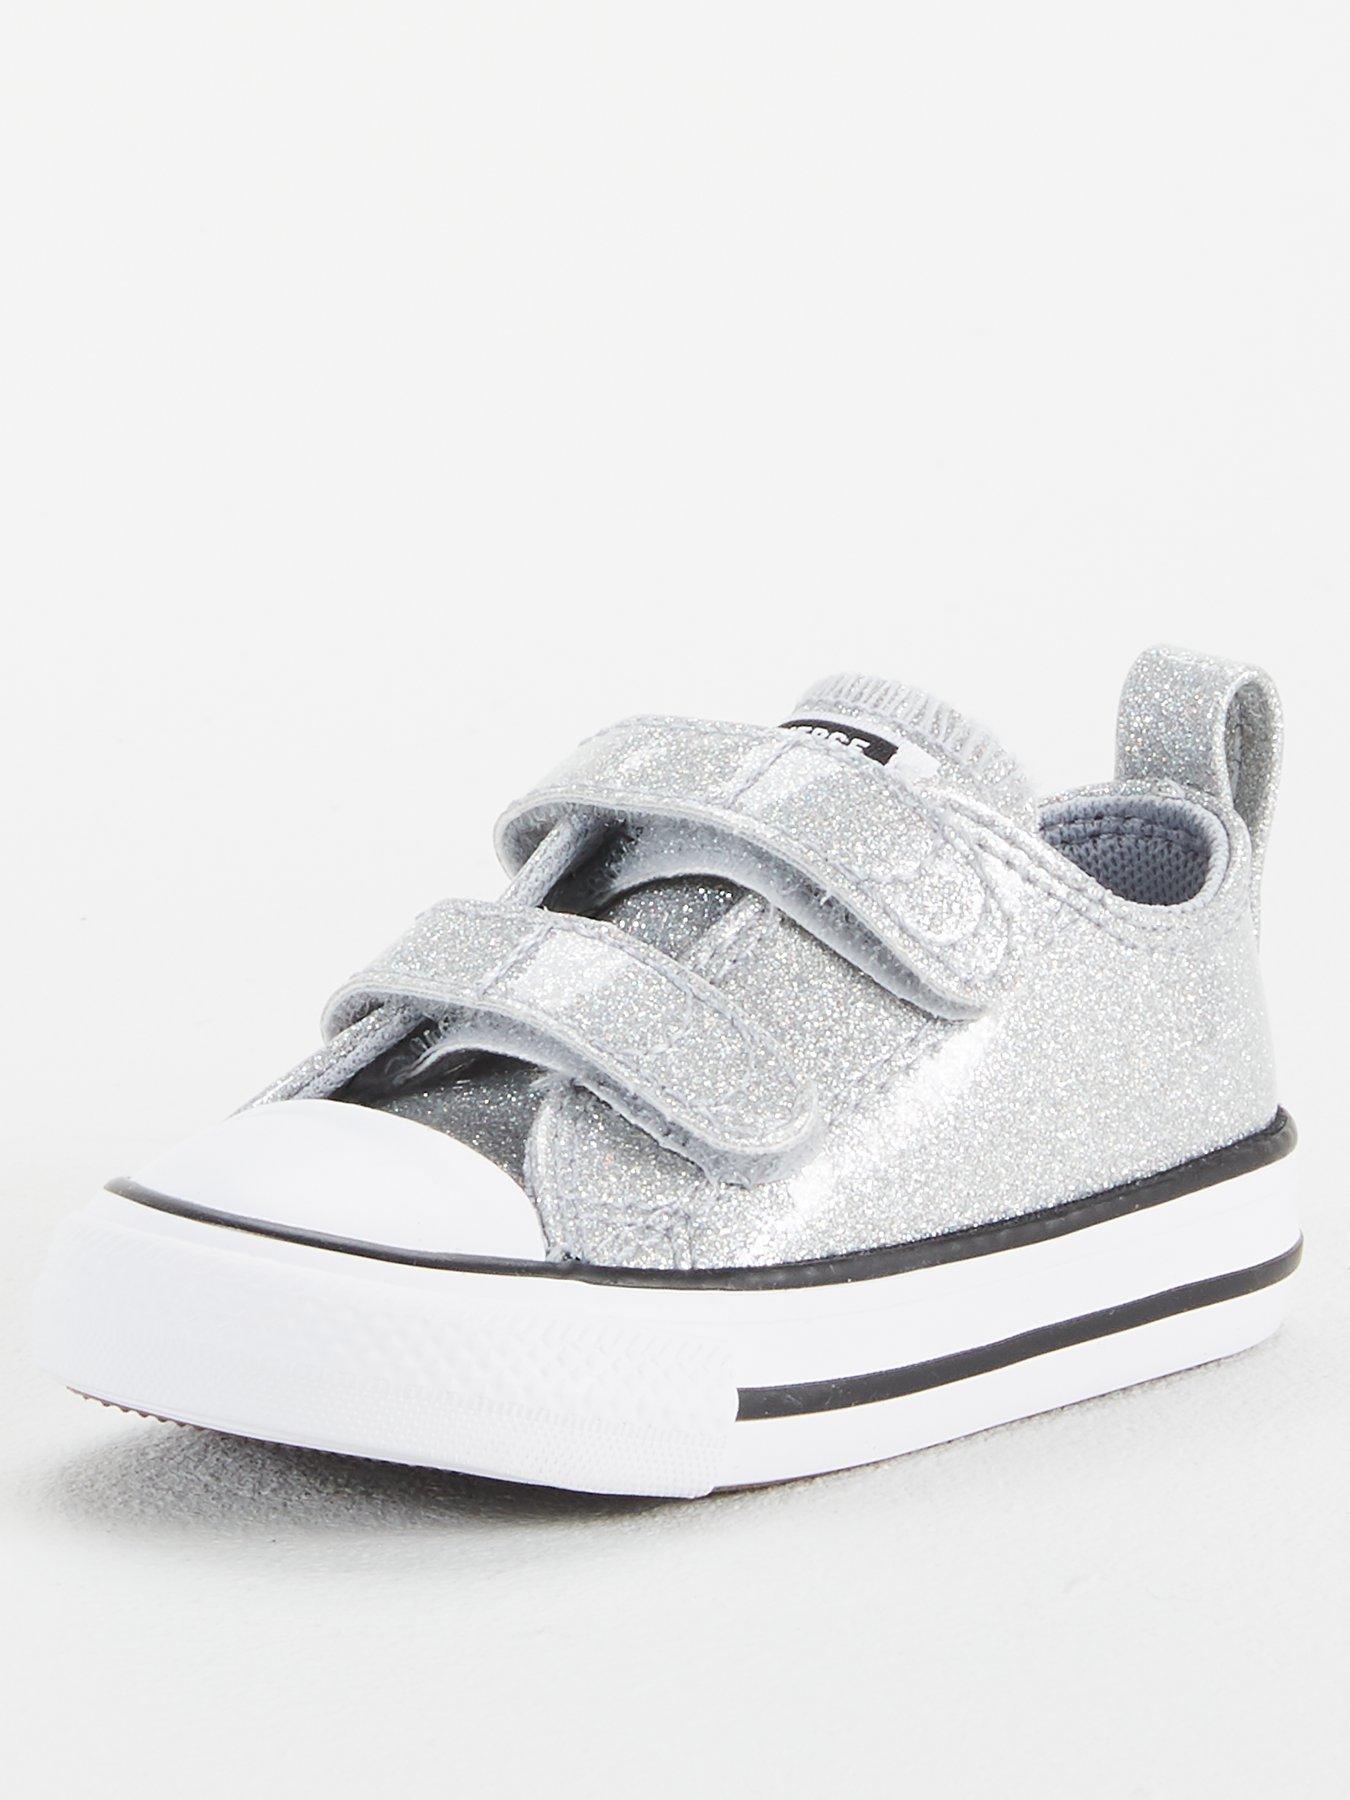 silver baby converse